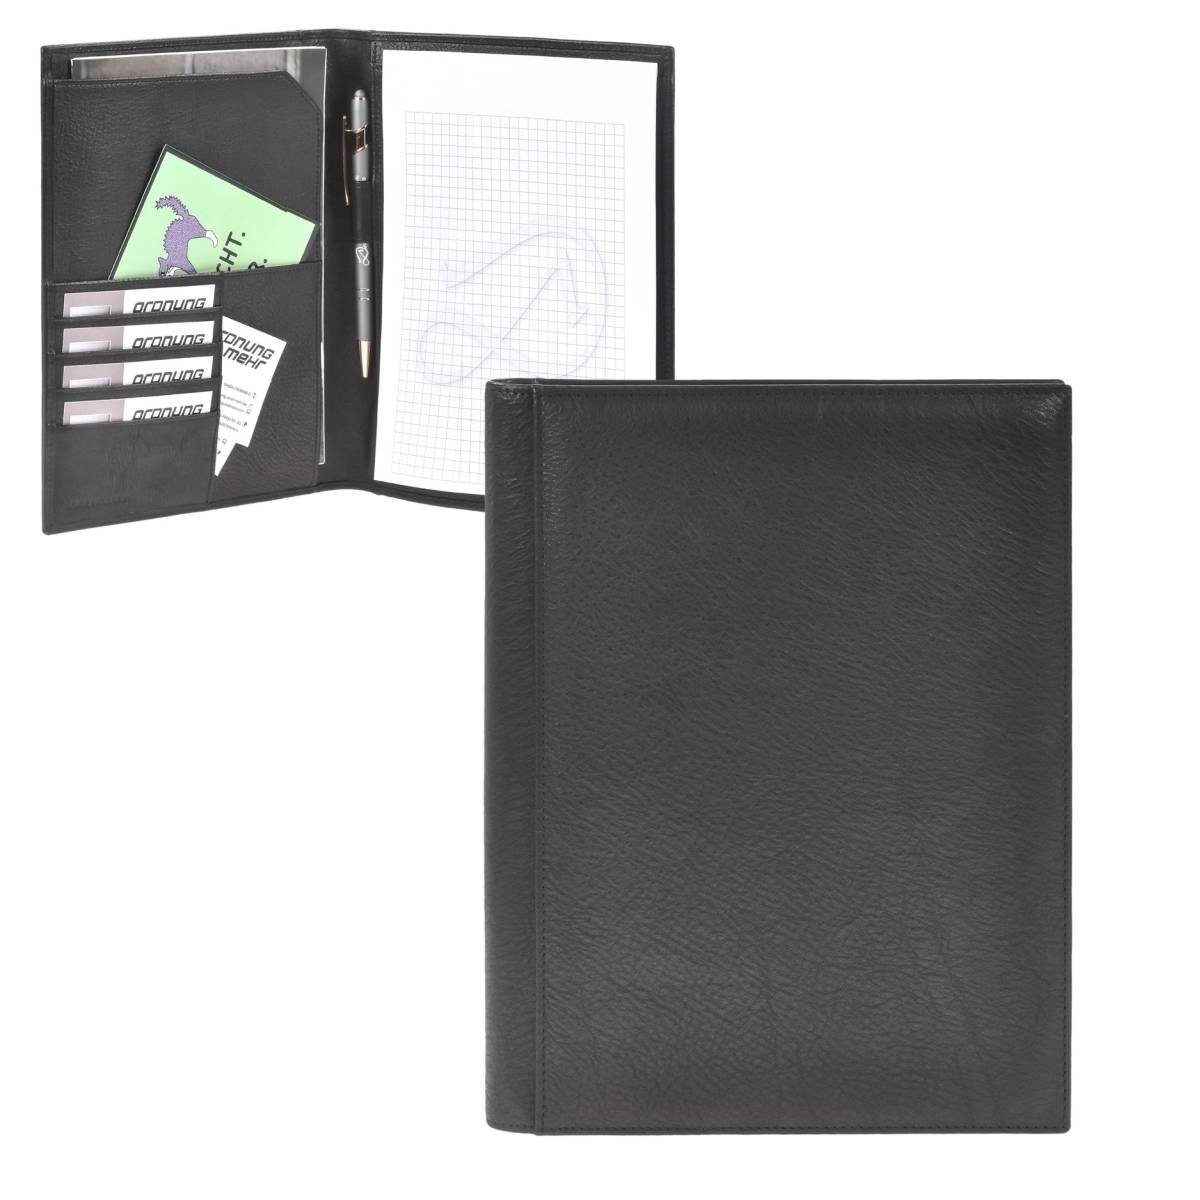 Sonnenleder Schreibmappe Tucholsky, Mappe, A5 Format, Leder, 18,5x23 cm schwarz